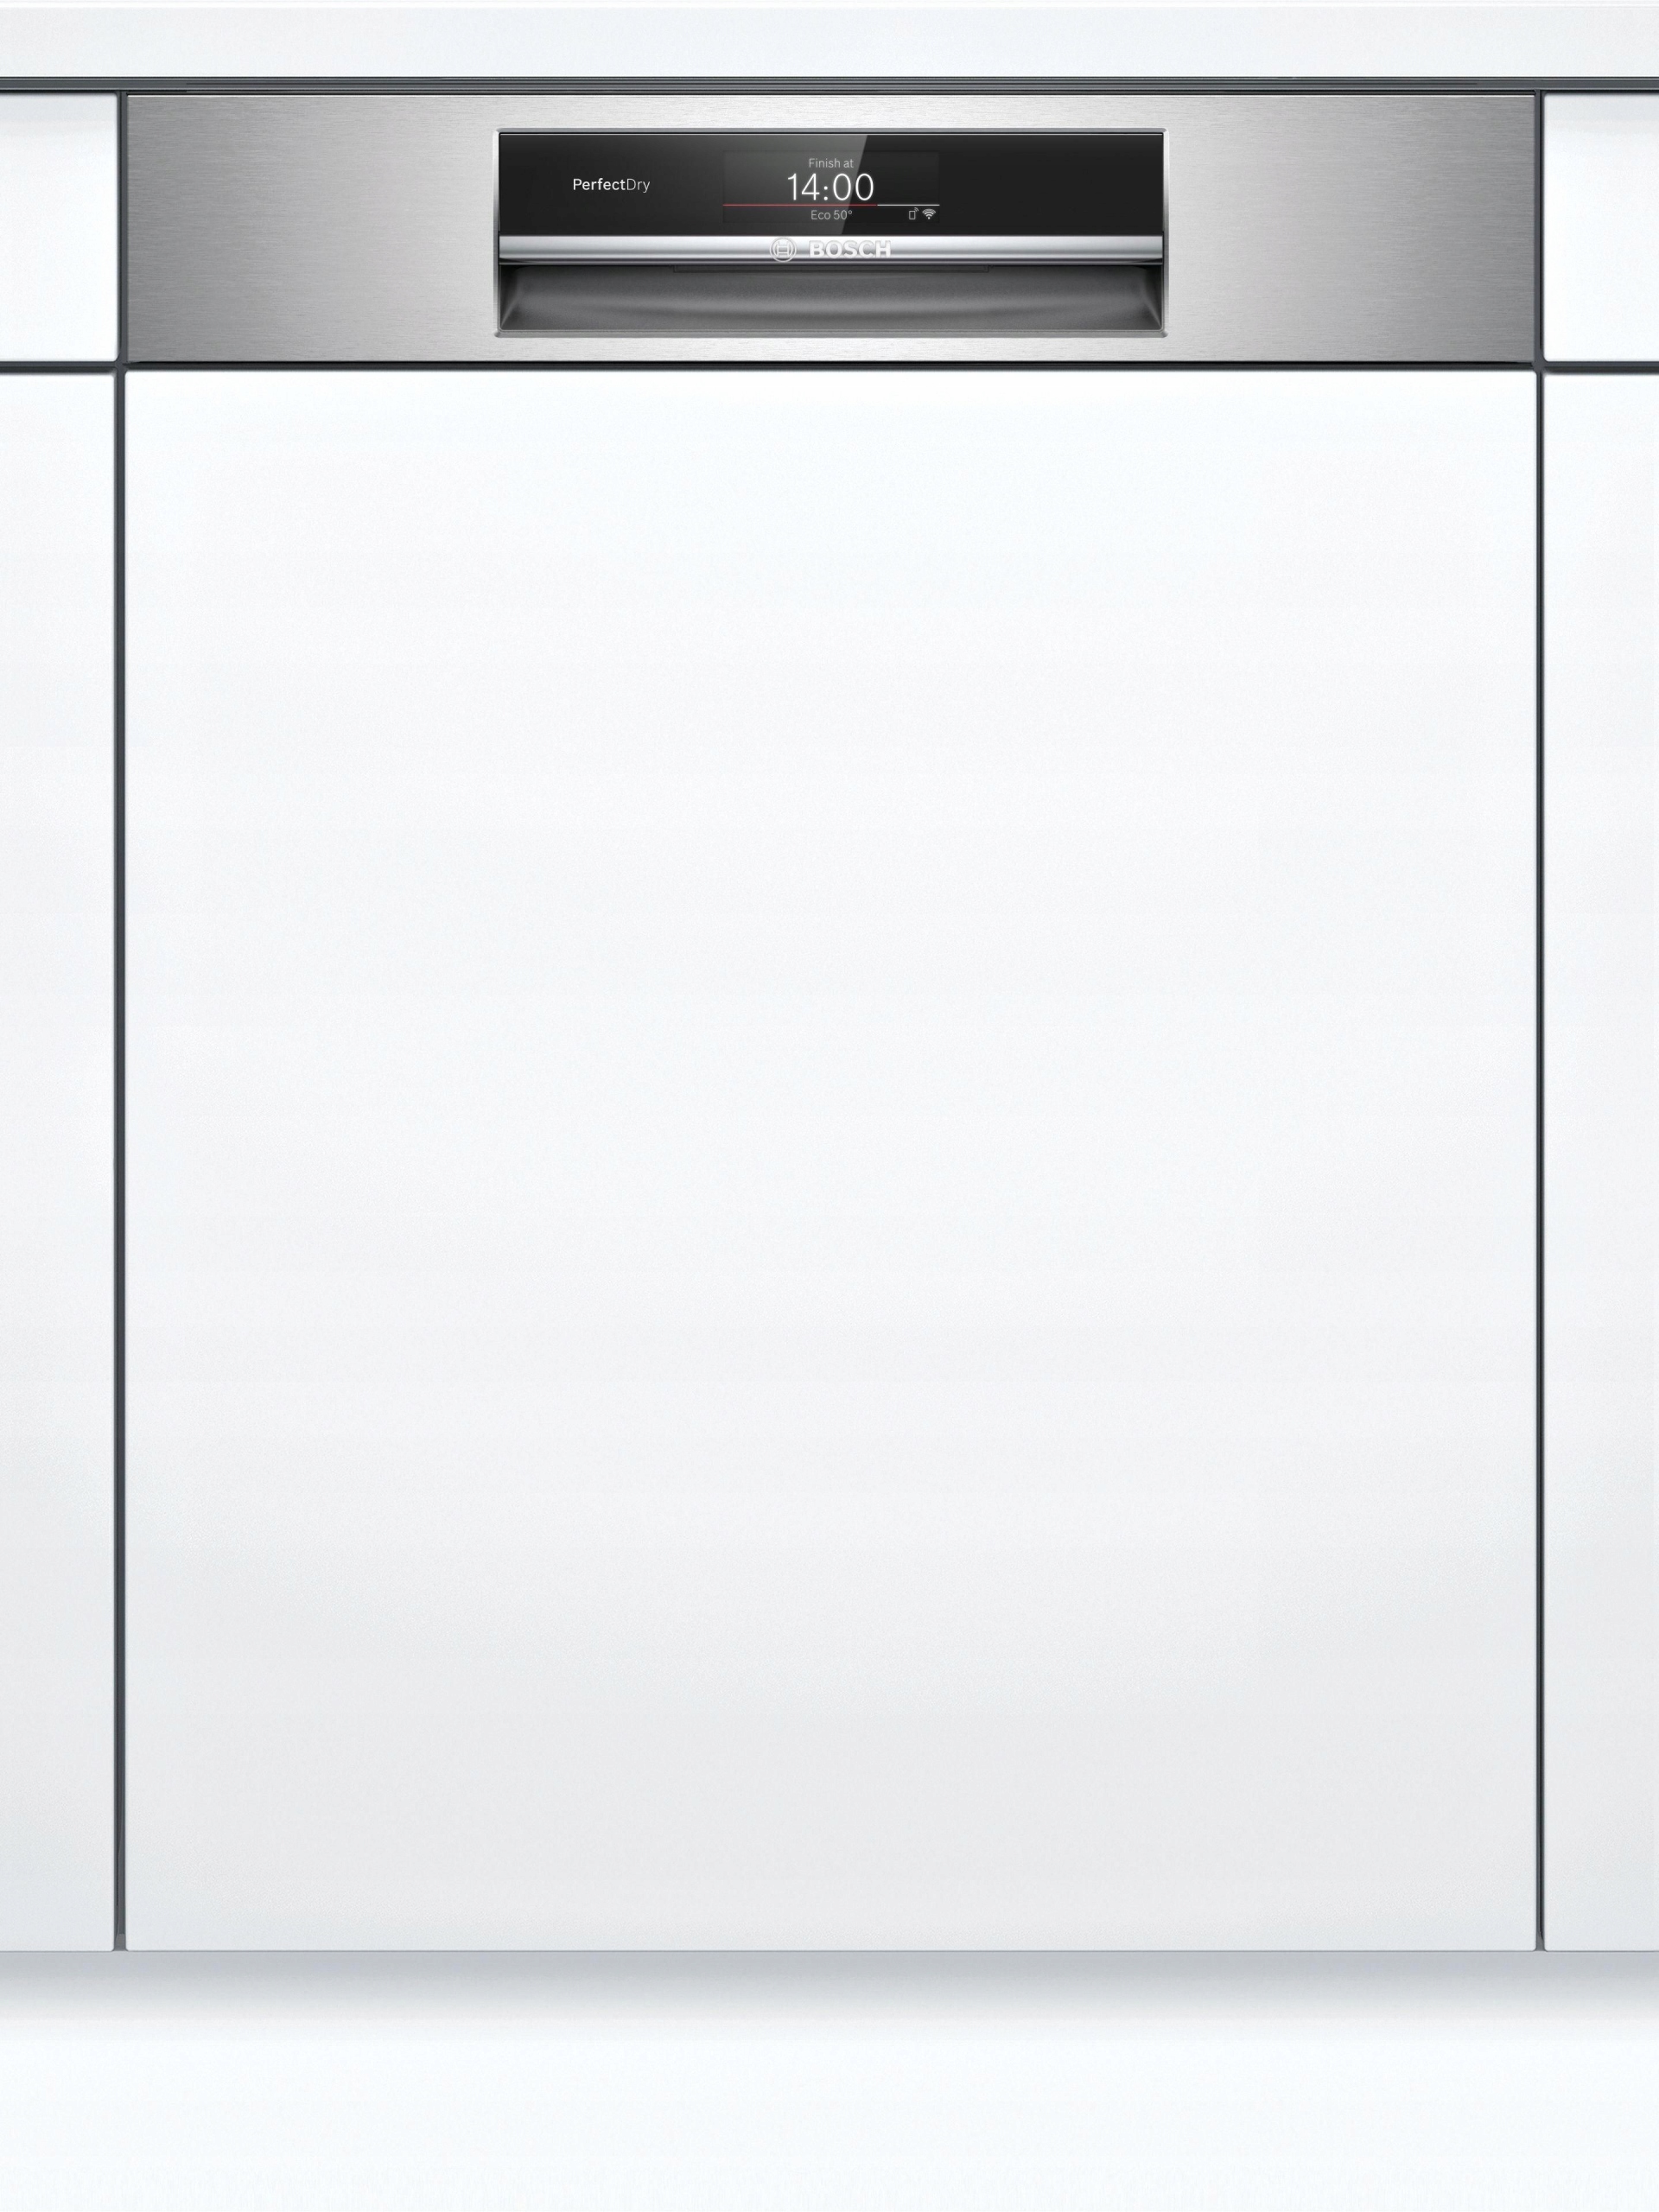 Встроенные посудомойки бош 60 см. Посудомоечная машина Bosch SMI 25as02 e. Встраиваемая посудомоечная машина Bosch smi50d05tr. Посудомоечная машина Bosch SPI 69t35. Посудомоечная машина Siemens SN 536s03 ie.